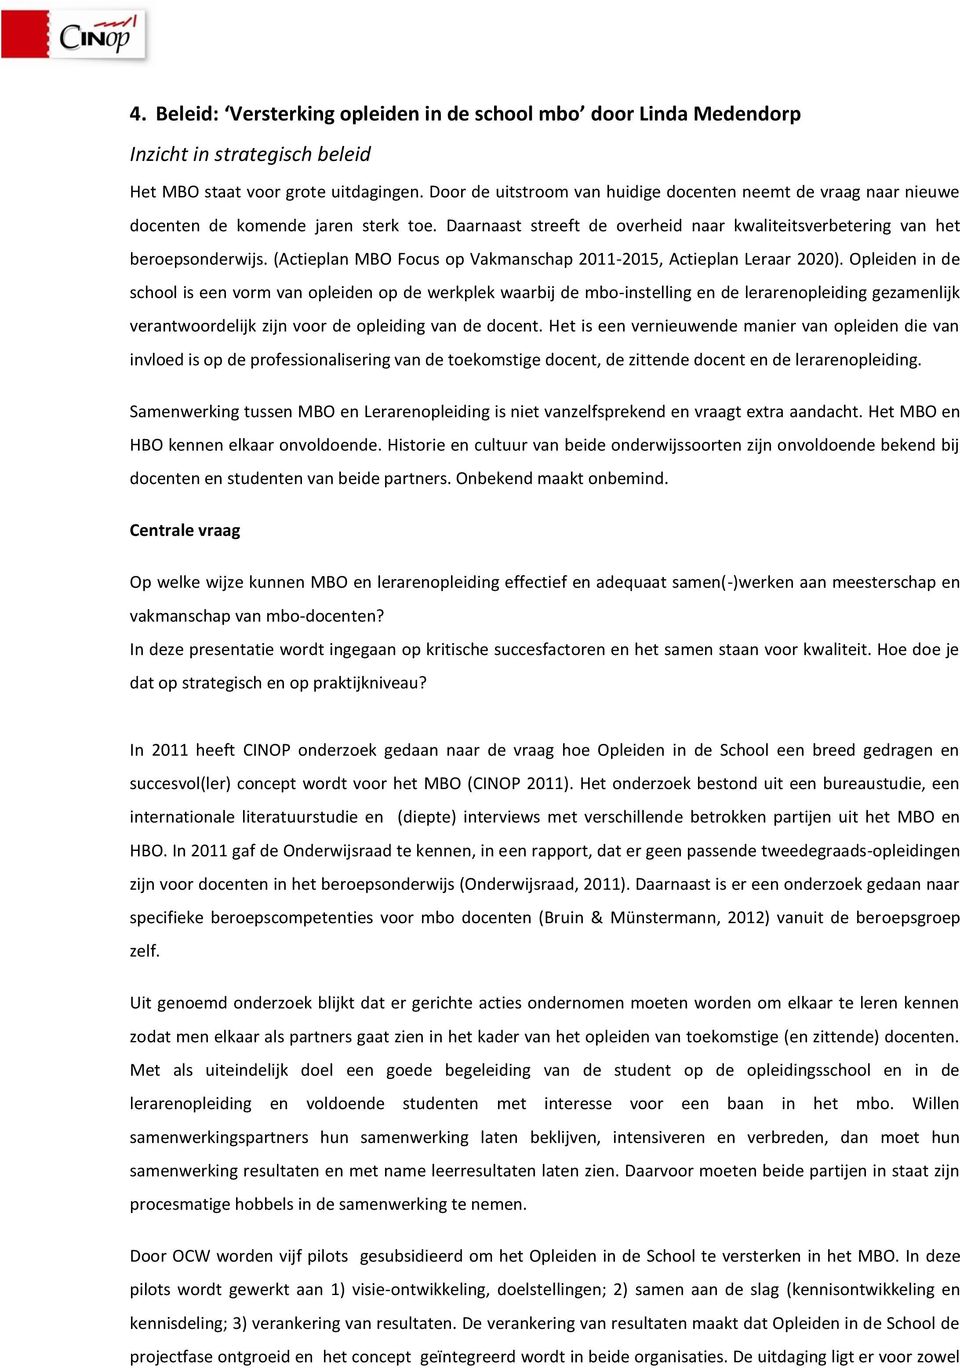 (Actieplan MBO Focus op Vakmanschap 2011-2015, Actieplan Leraar 2020).